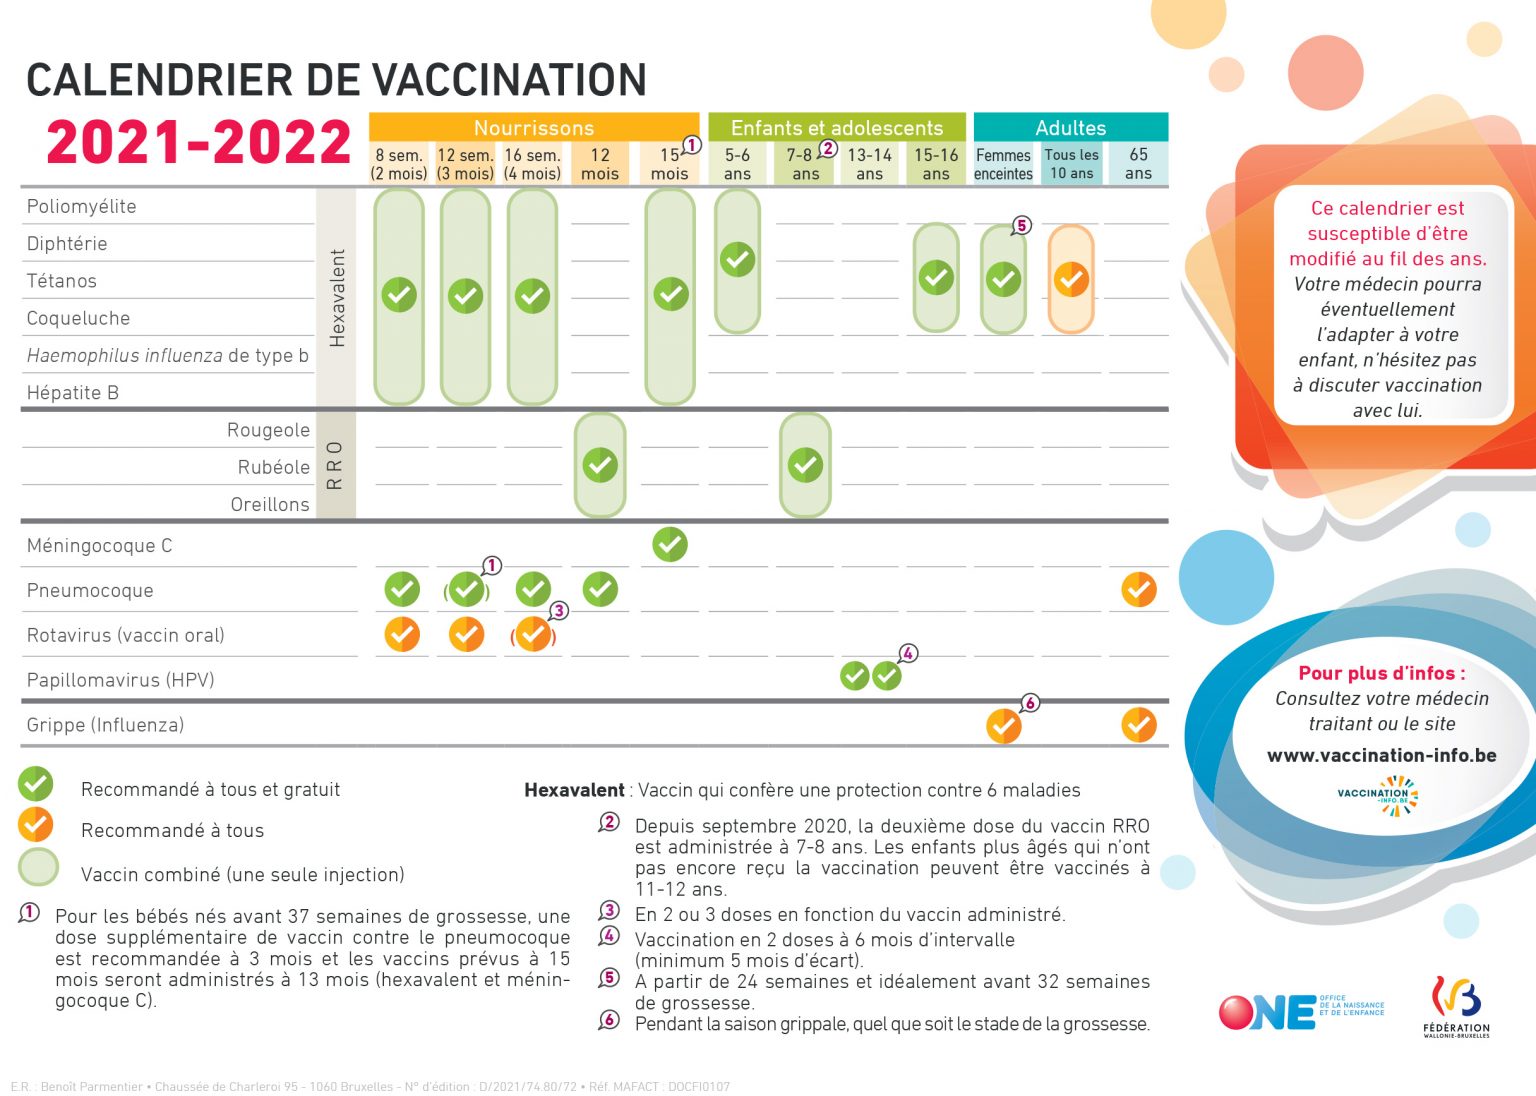 Avez-vous loupé un moment de vaccination ? | vaccination-info